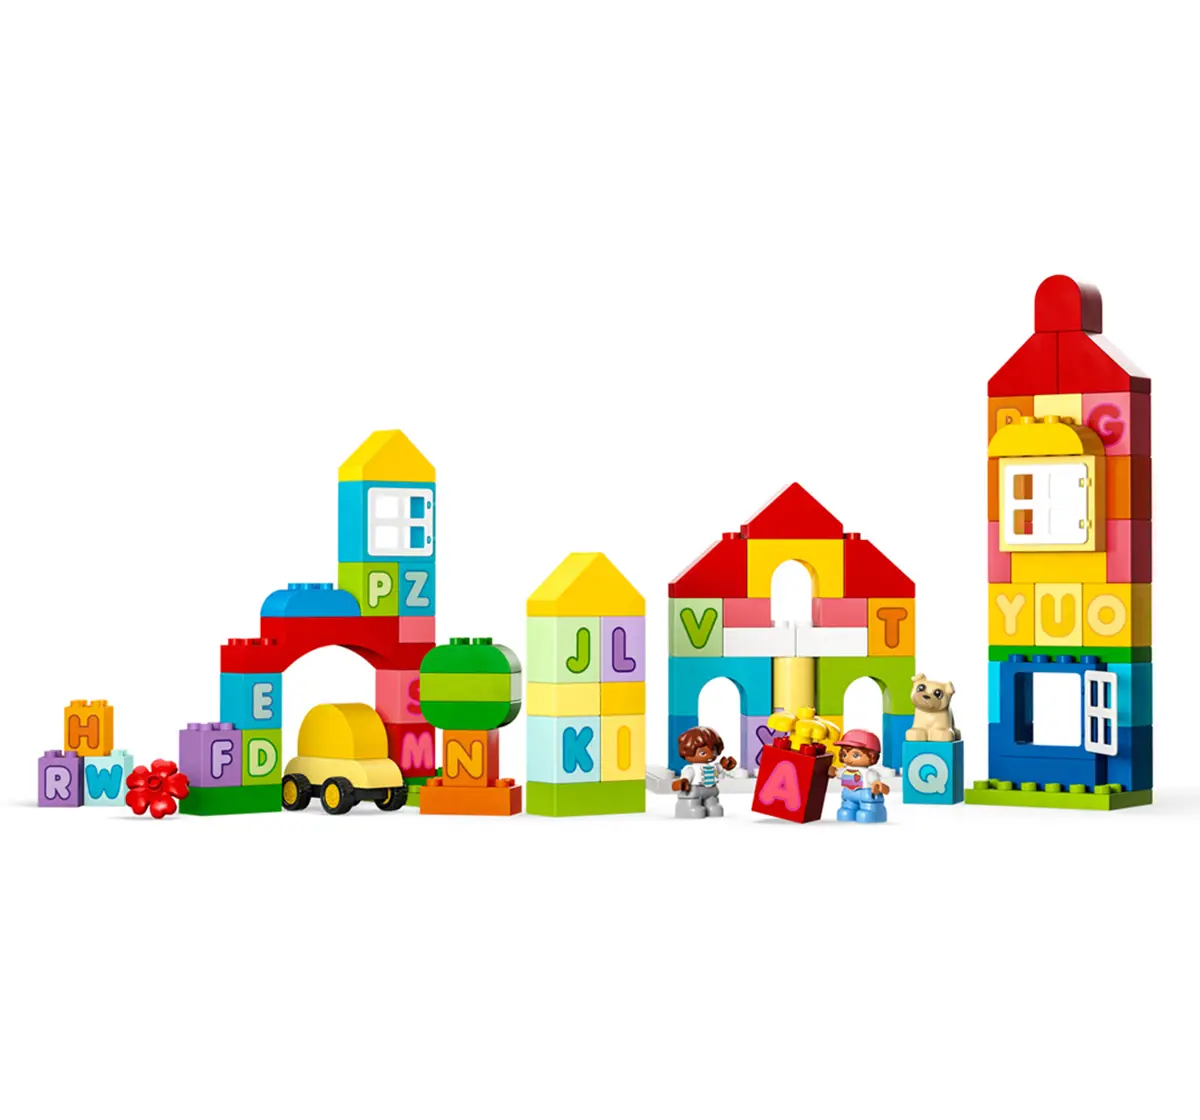 Lego Duplo Classic Alphabet Town 10935 Building Toy Set (87 Pieces)